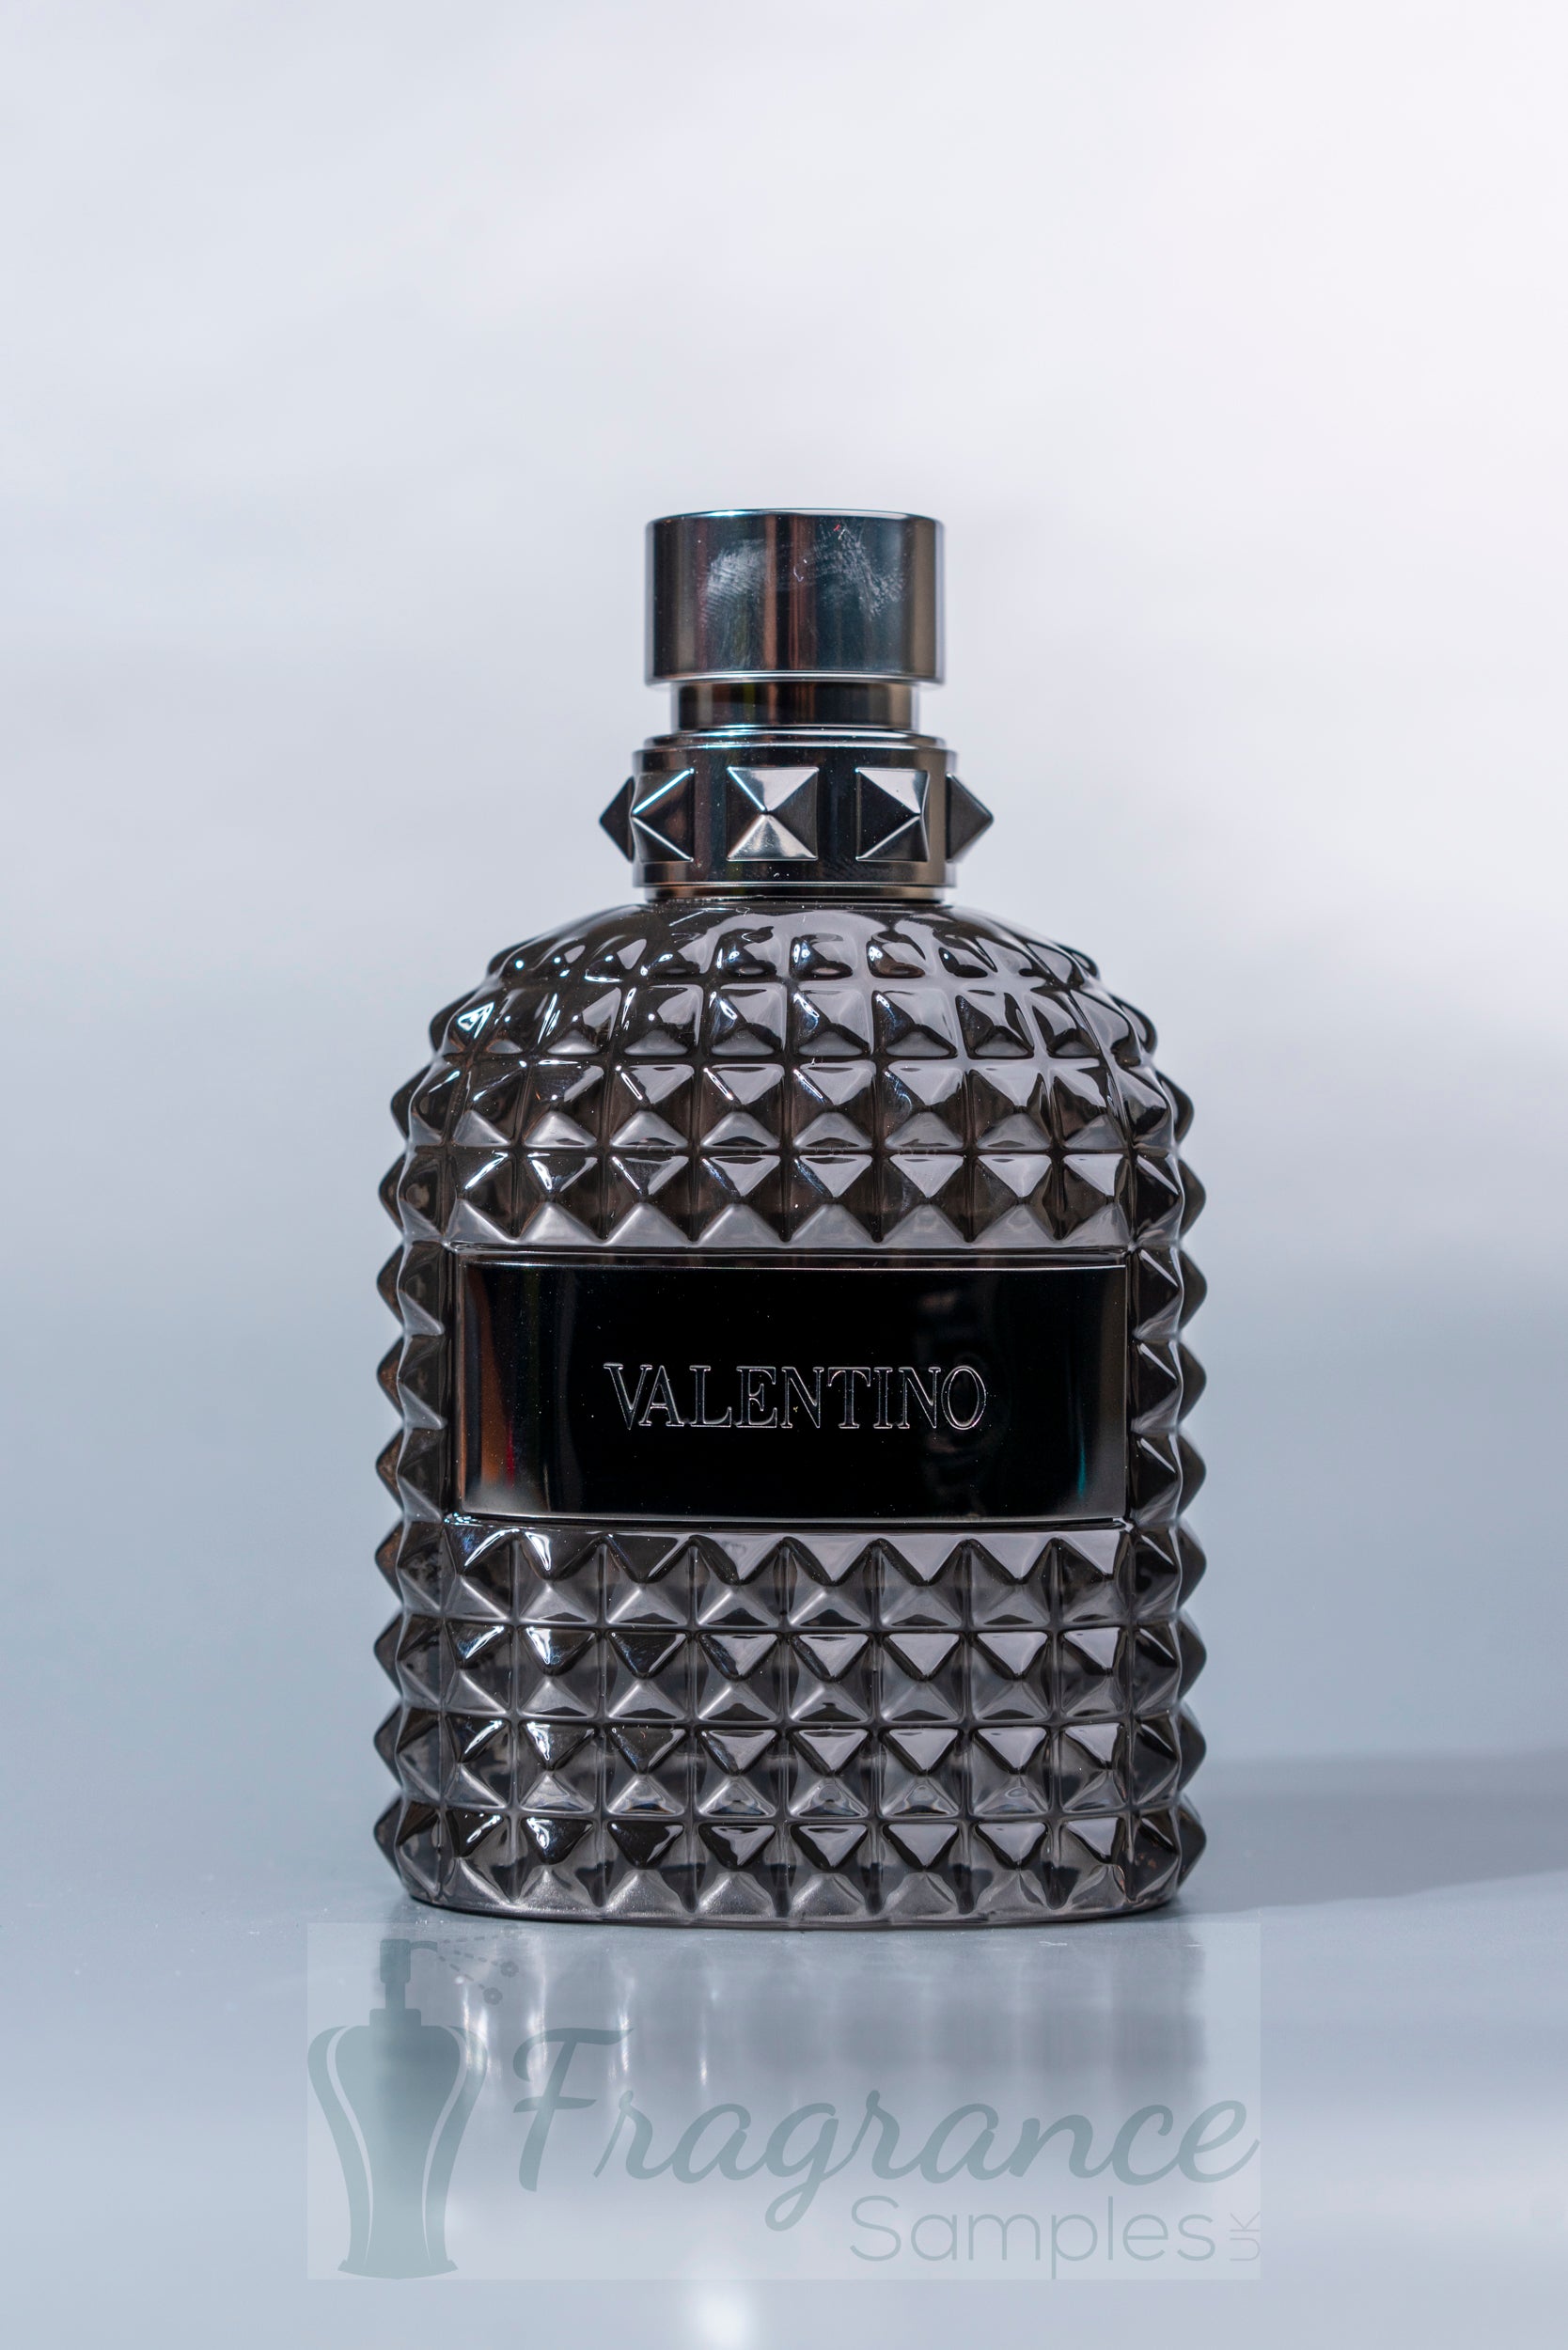 Valentino Uomo Intense Top Sellers | website.jkuat.ac.ke